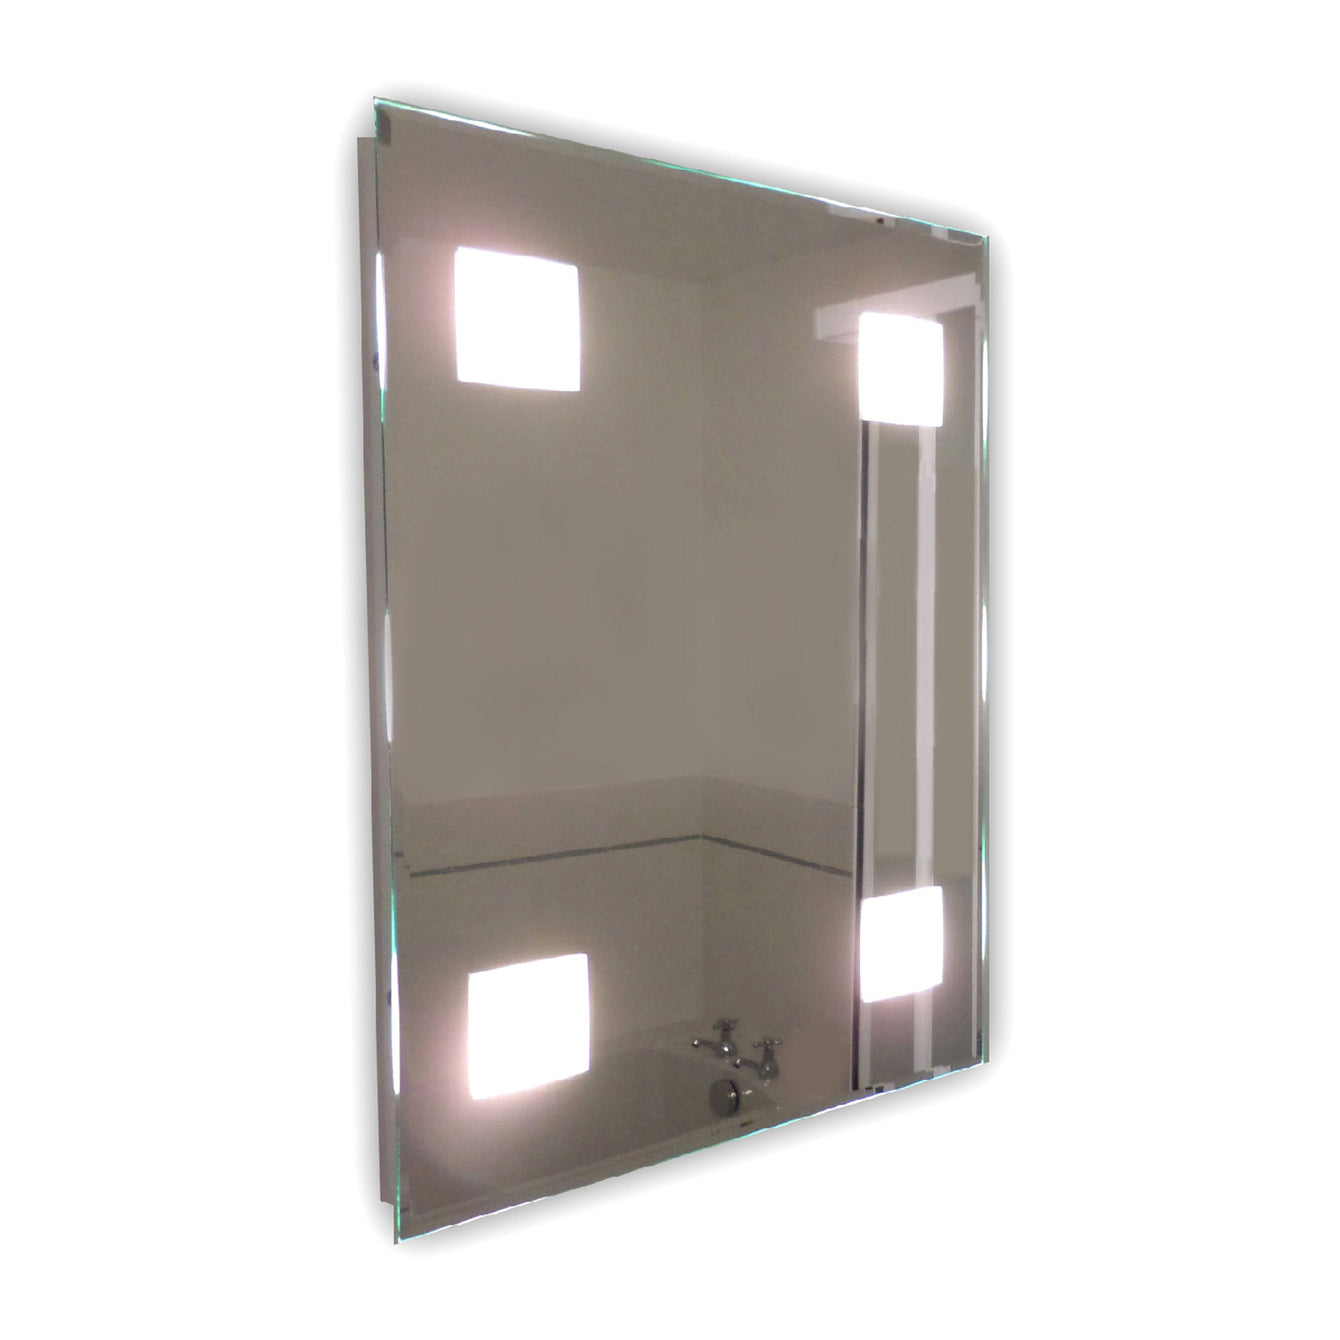 Snaresbrook Standard, Large and Landscape Rectangular Mirror LED Light - Buy It Better Standard